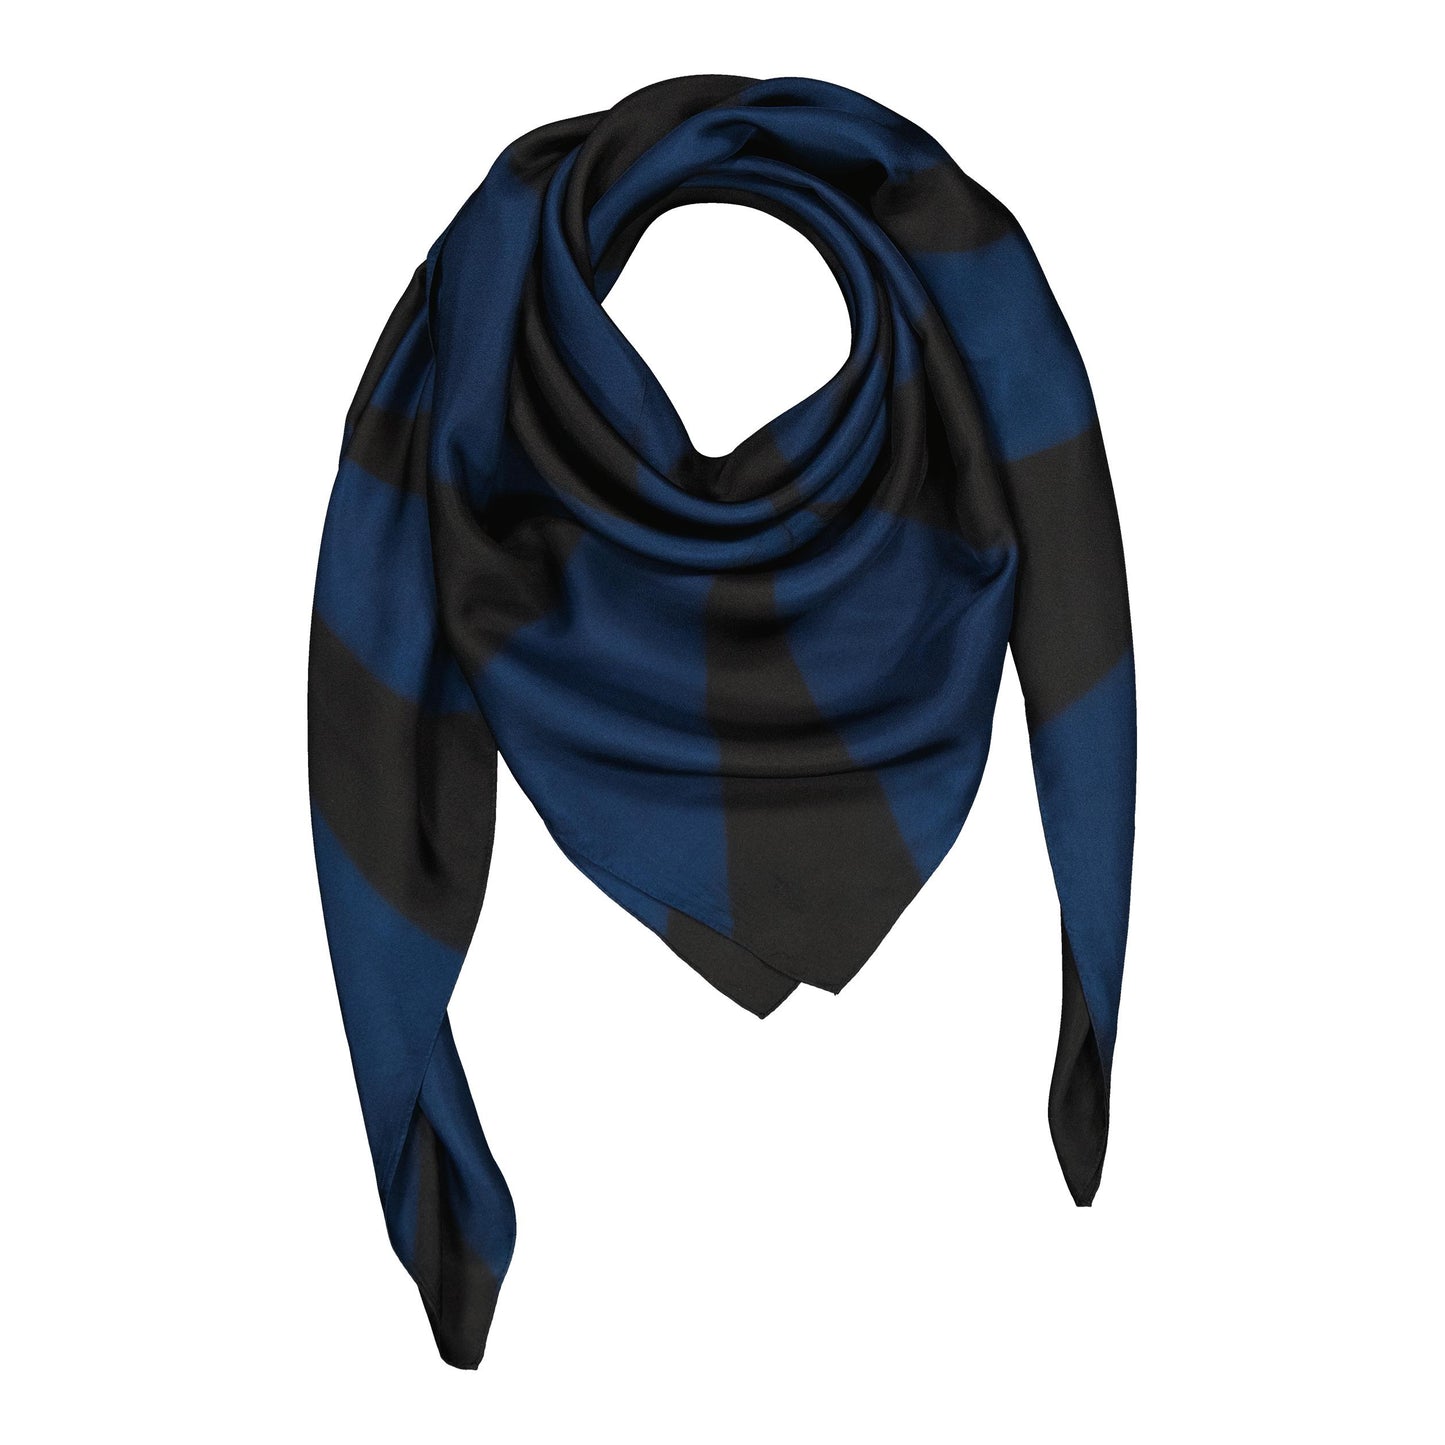 CIRCUS - silk square CUMULUS BLUE & BLACK